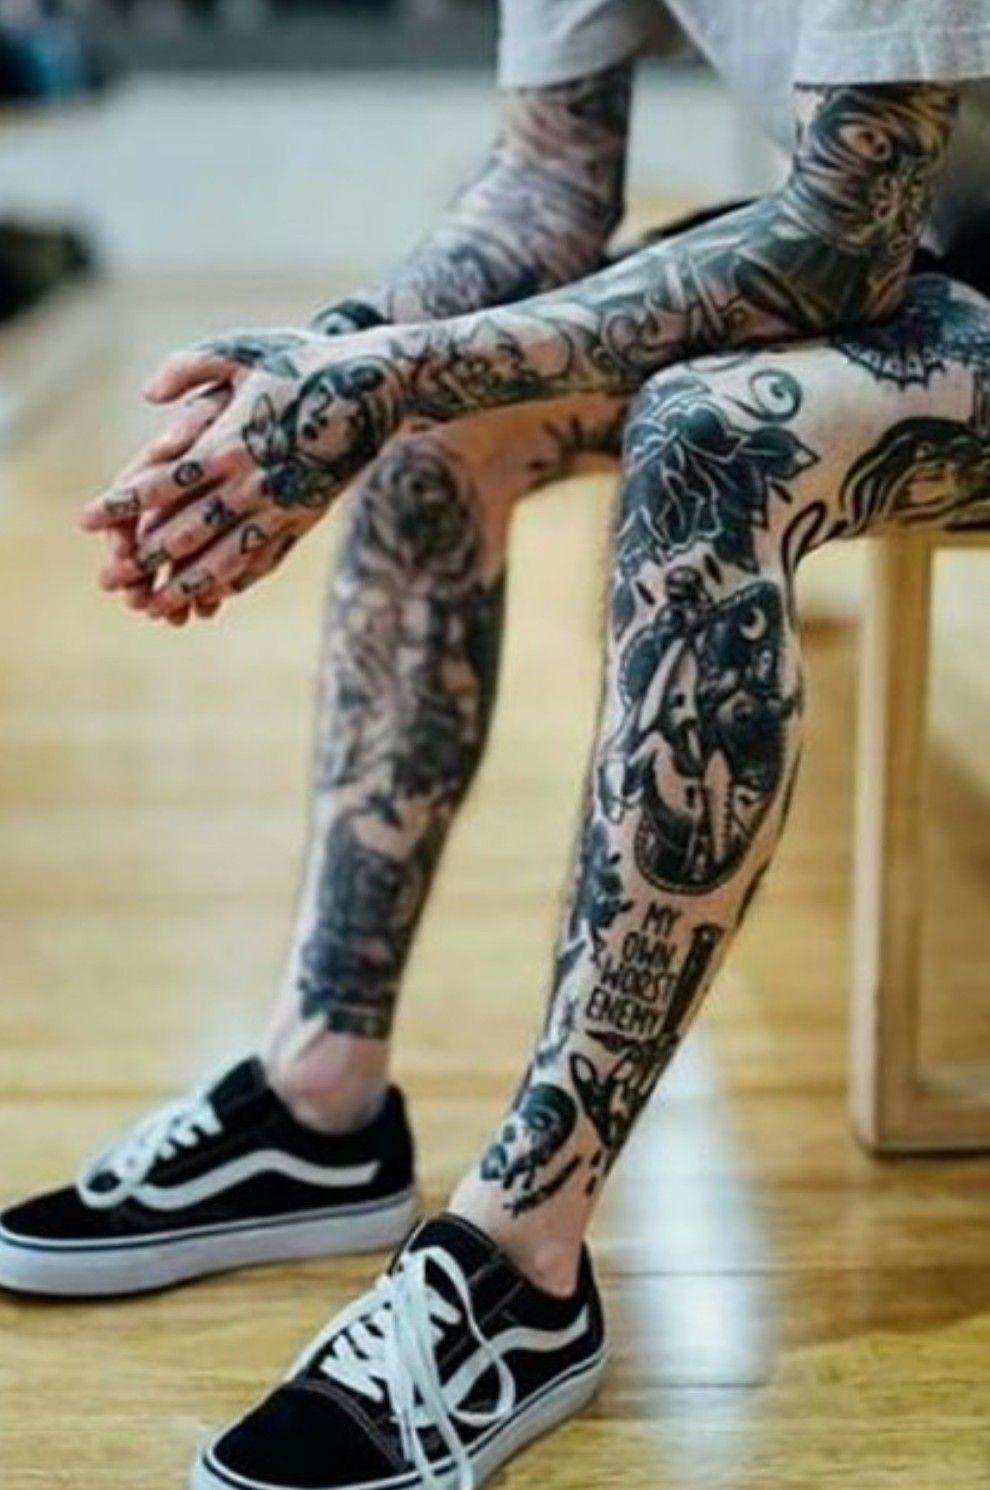 900 Hand Sleeve ideas  hand tattoos tattoos sleeve tattoos